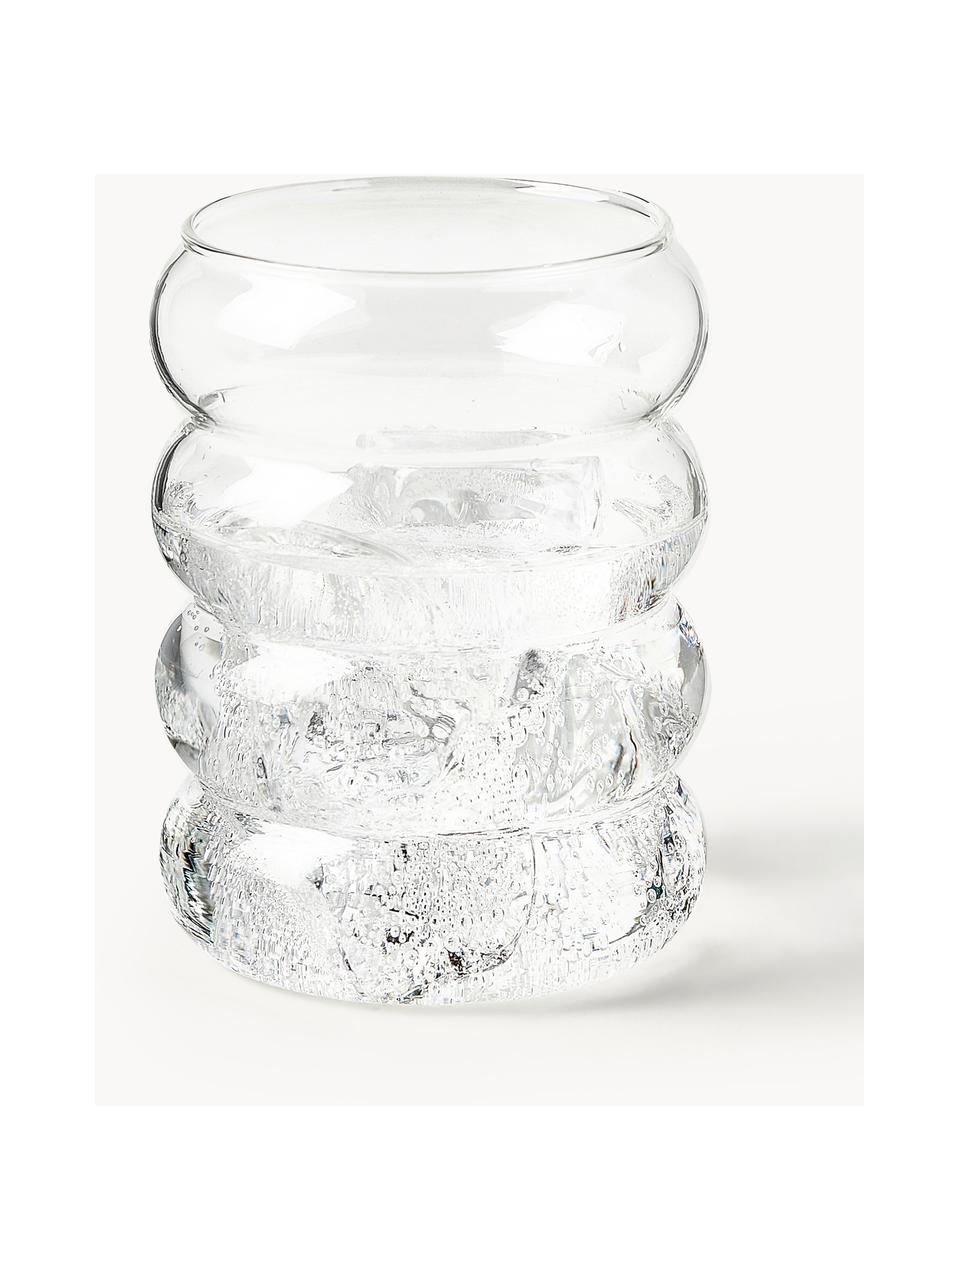 Bicchieri in vetro soffiato Bubbly 4 pz, Vetro borosilicato, Trasparente, Ø 8 x Alt. 10 cm, 320 ml